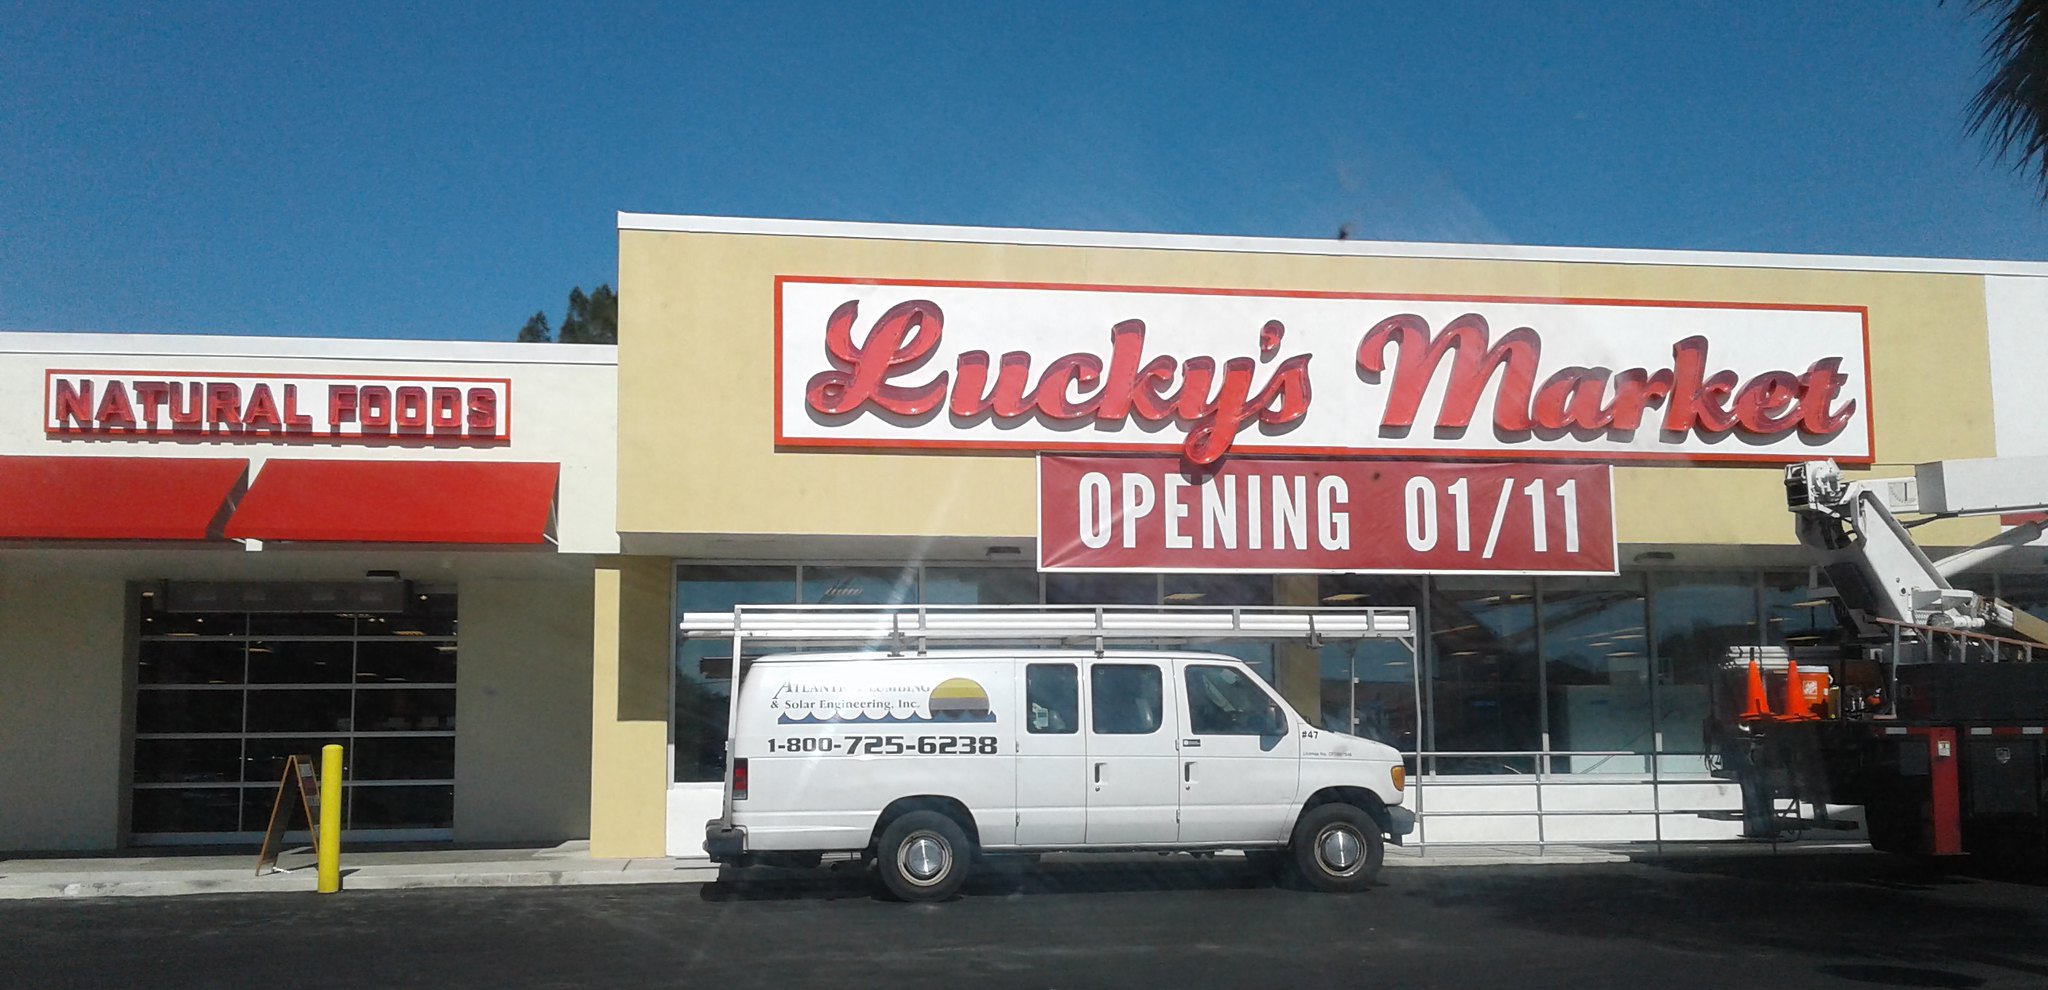 Future Lucky's Market - West Melbourne, FL